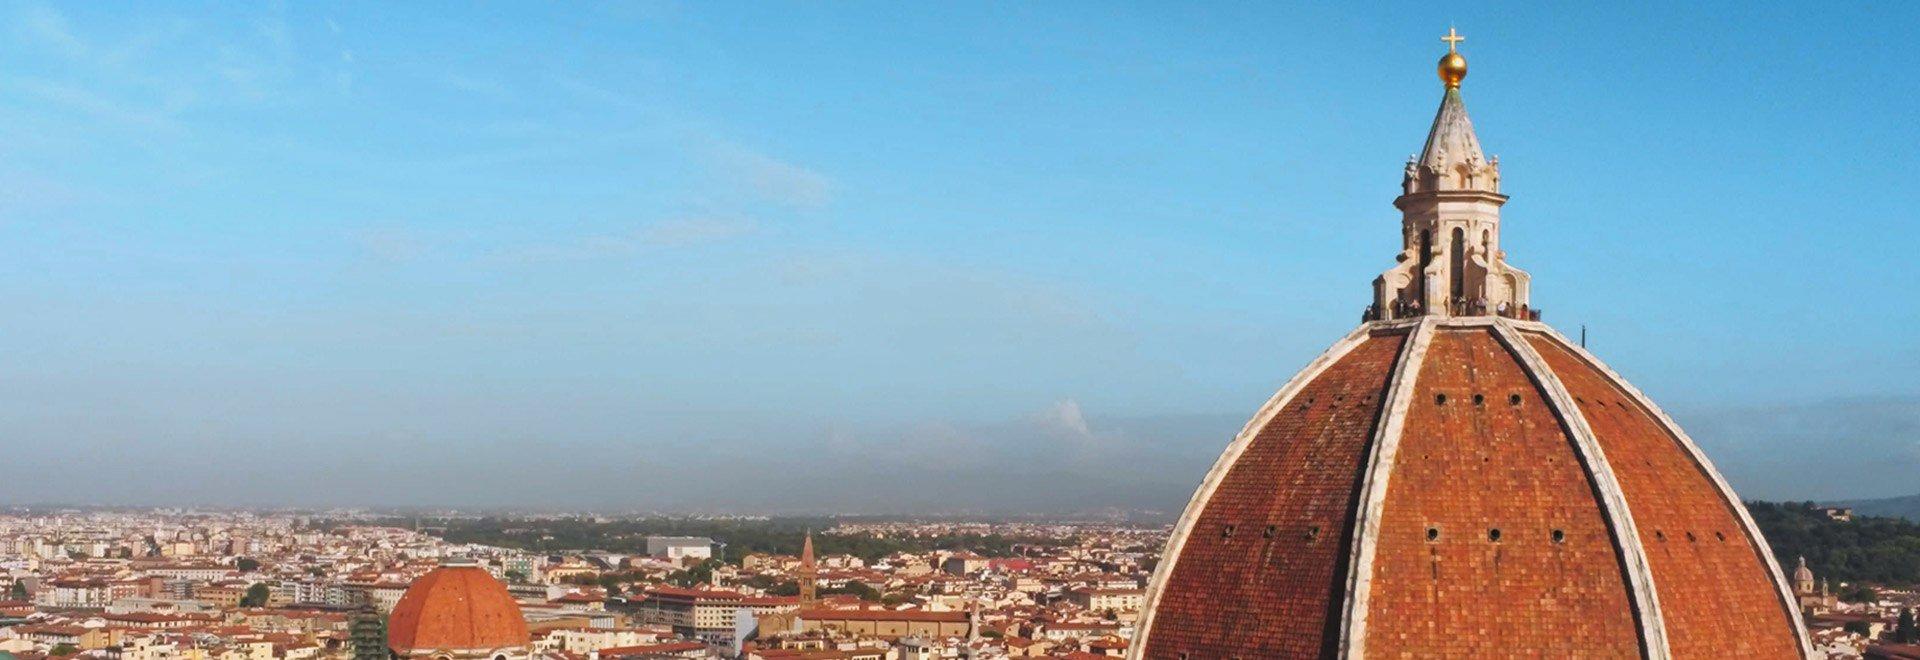 Brunelleschi e le grandi cupole del mondo